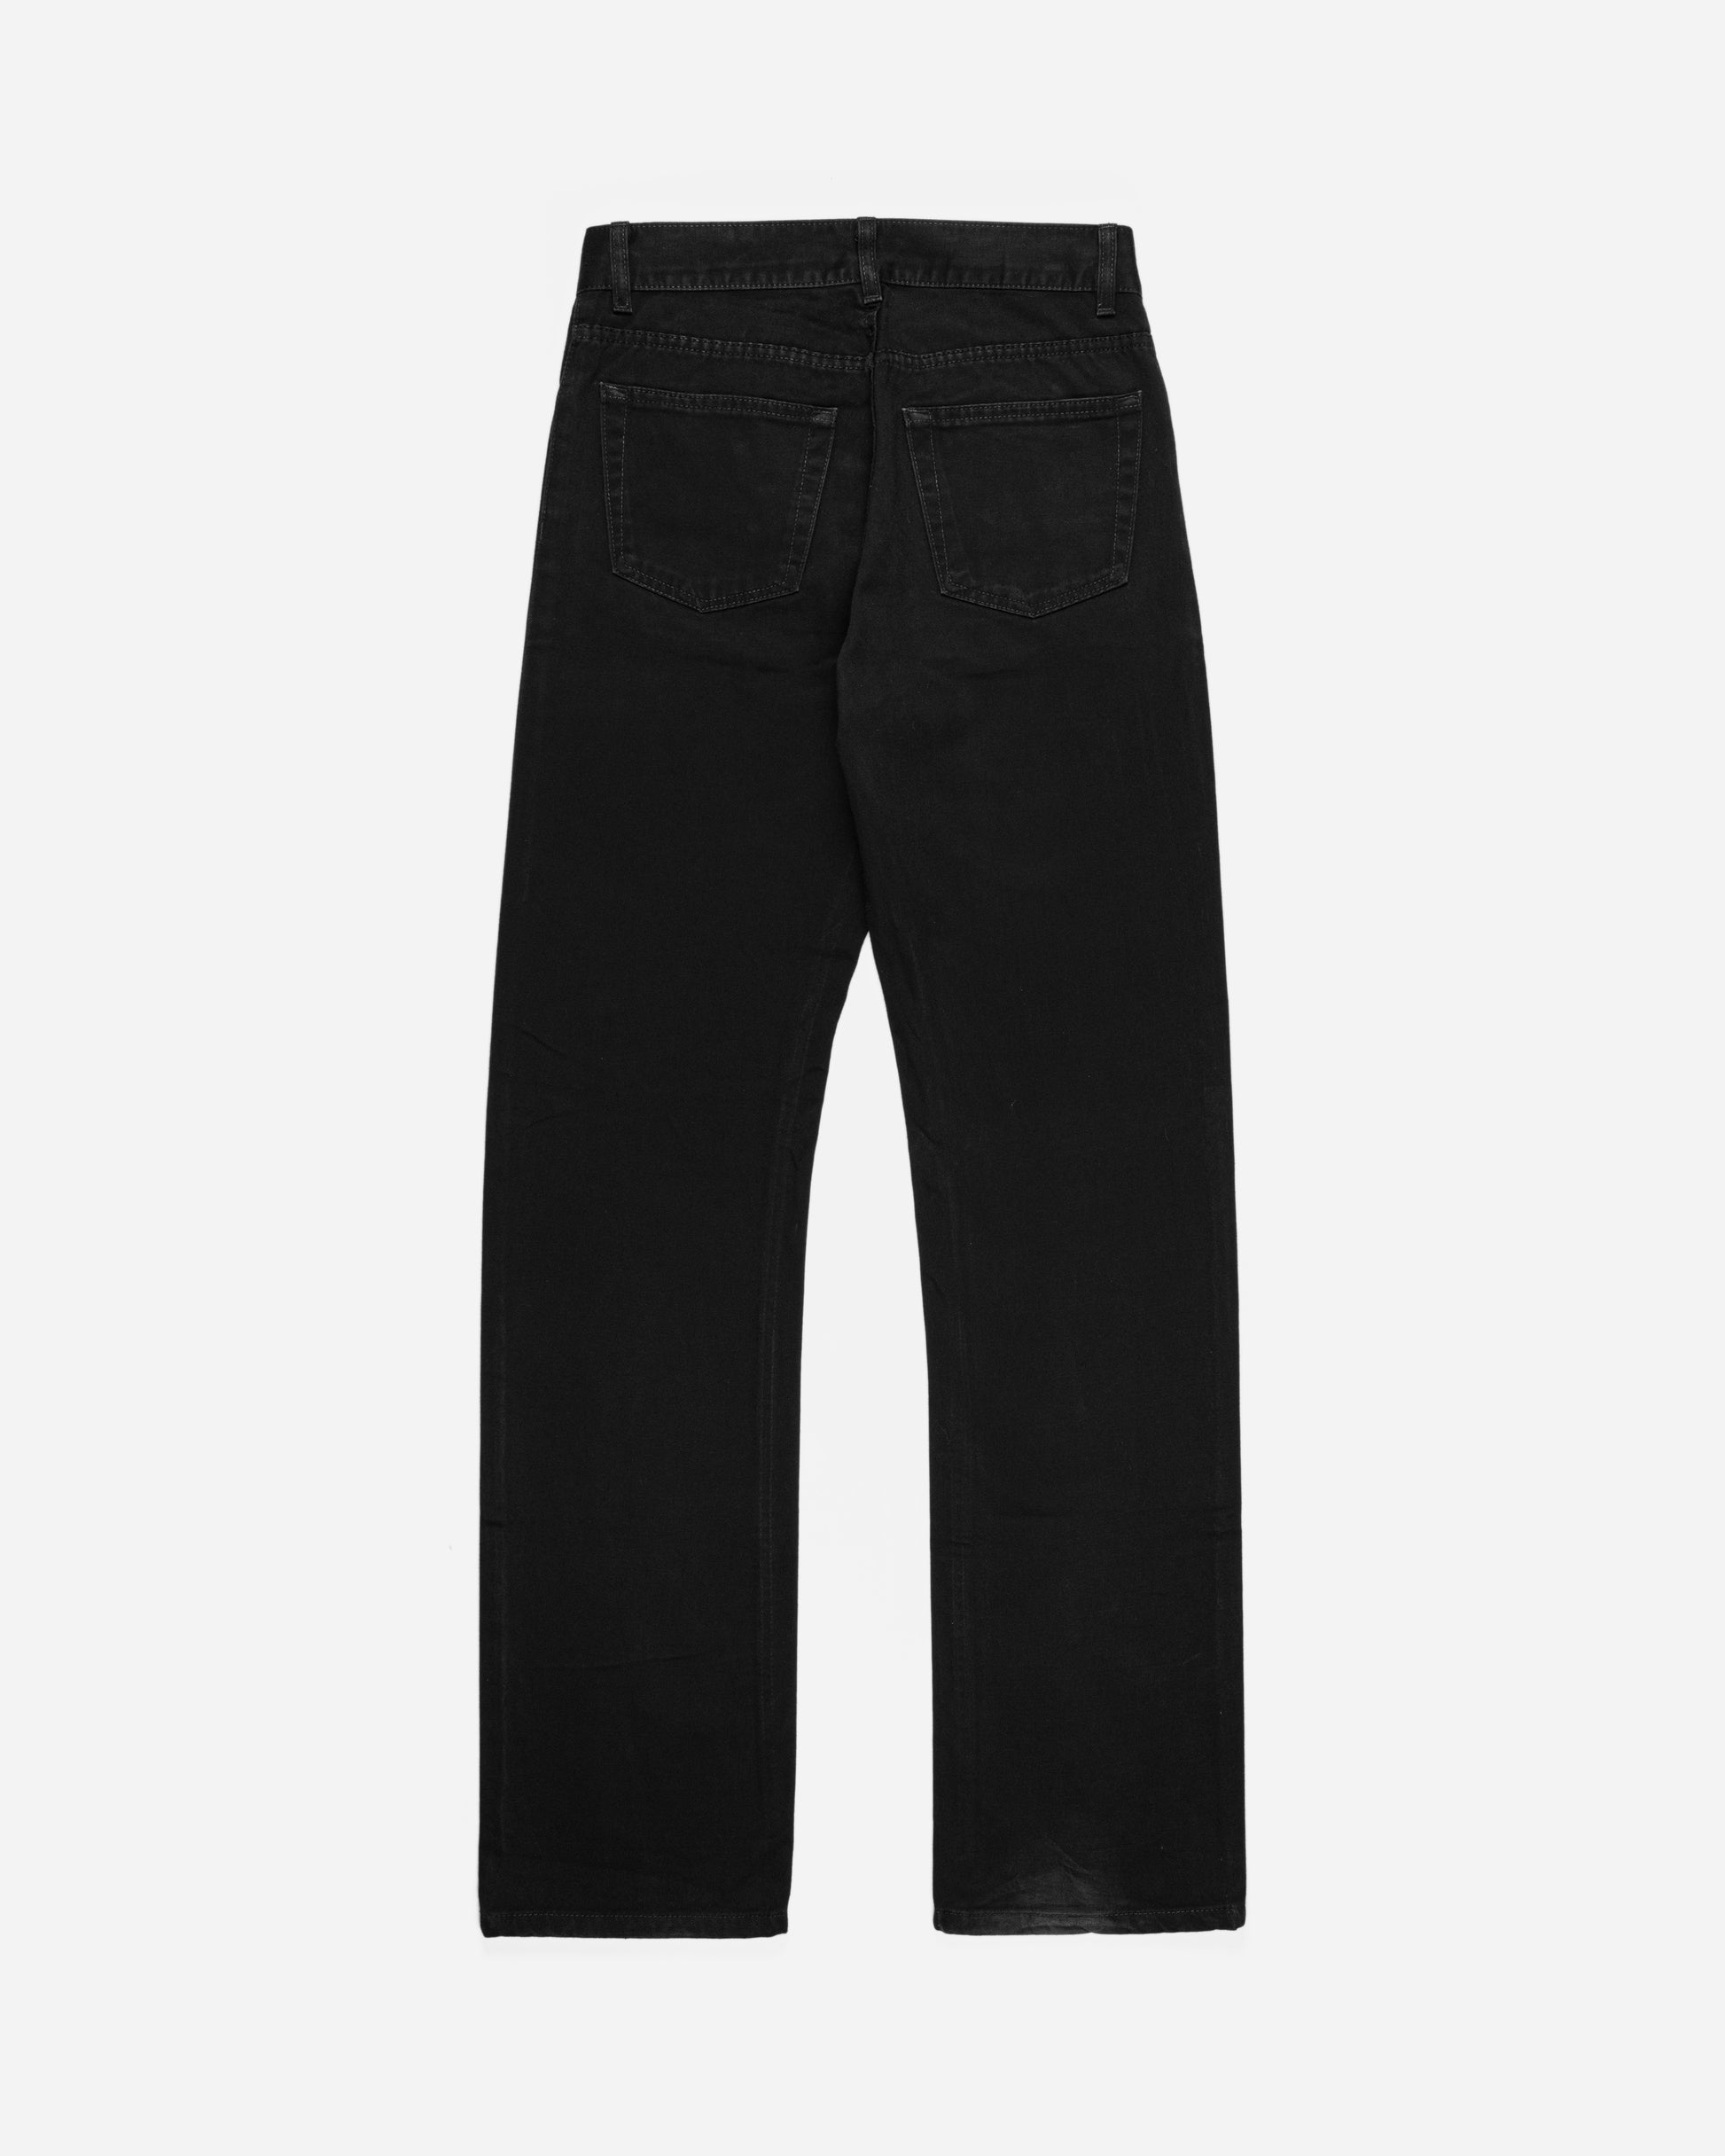 Helmut Lang Black Boot Cut Jeans - 1990s - SILVER LEAGUE